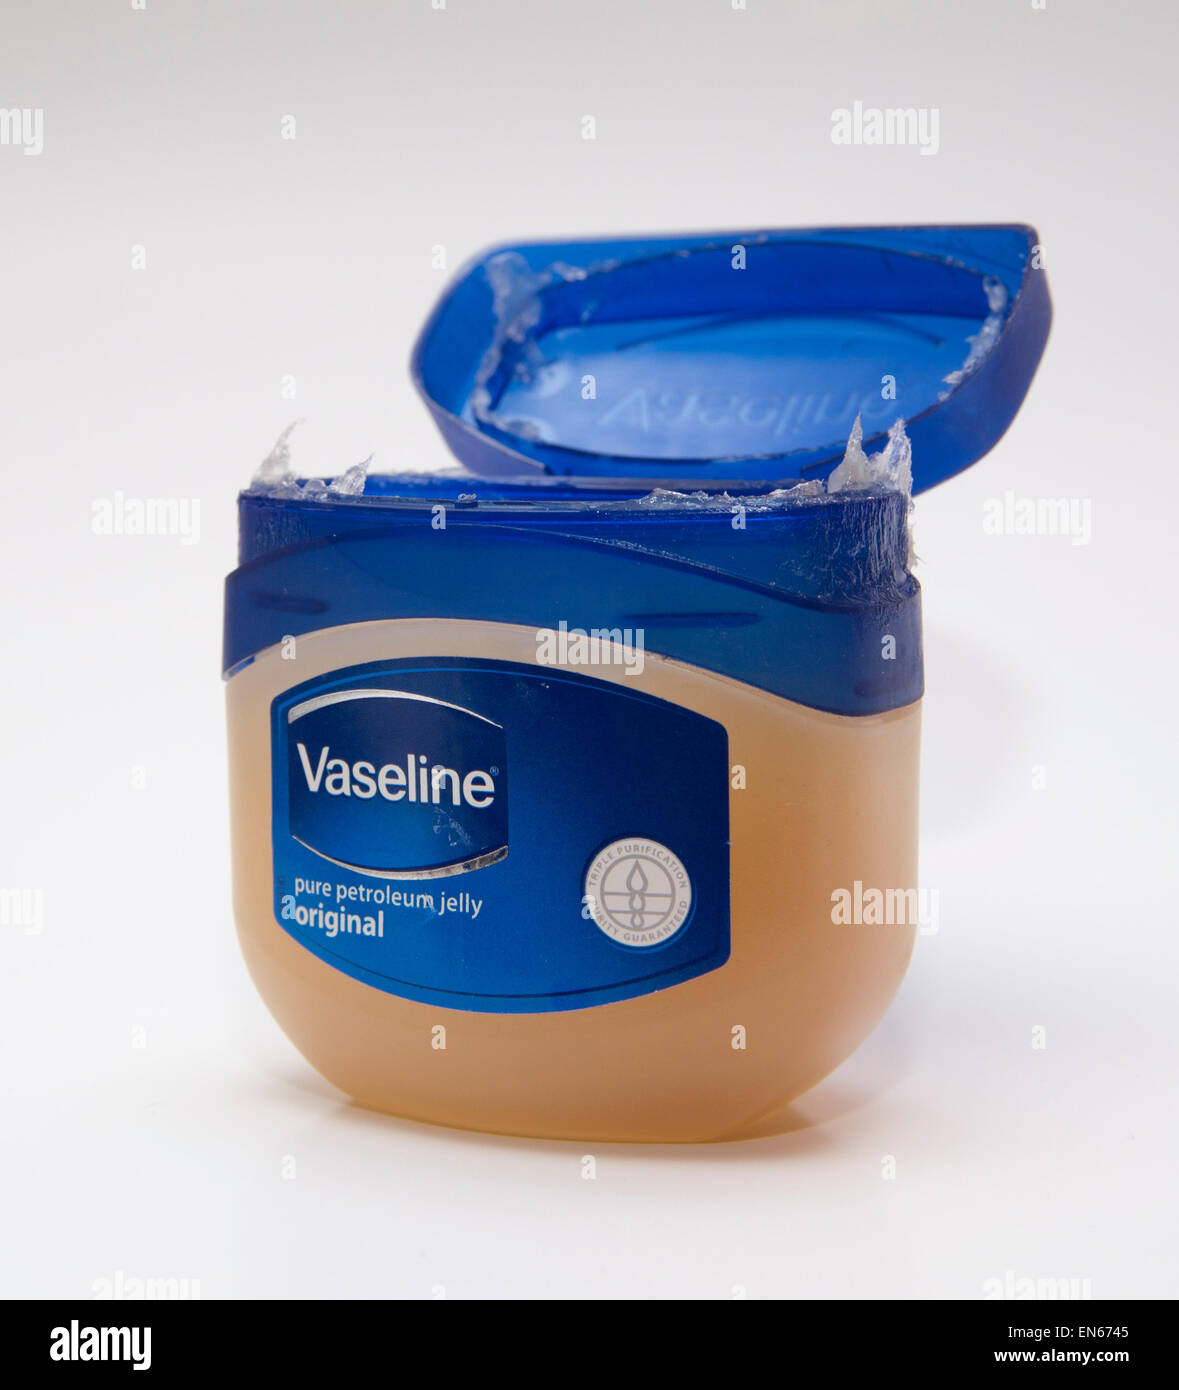 Tub of Vaseline petroleum jelly, isolated on white background Stock Photo -  Alamy